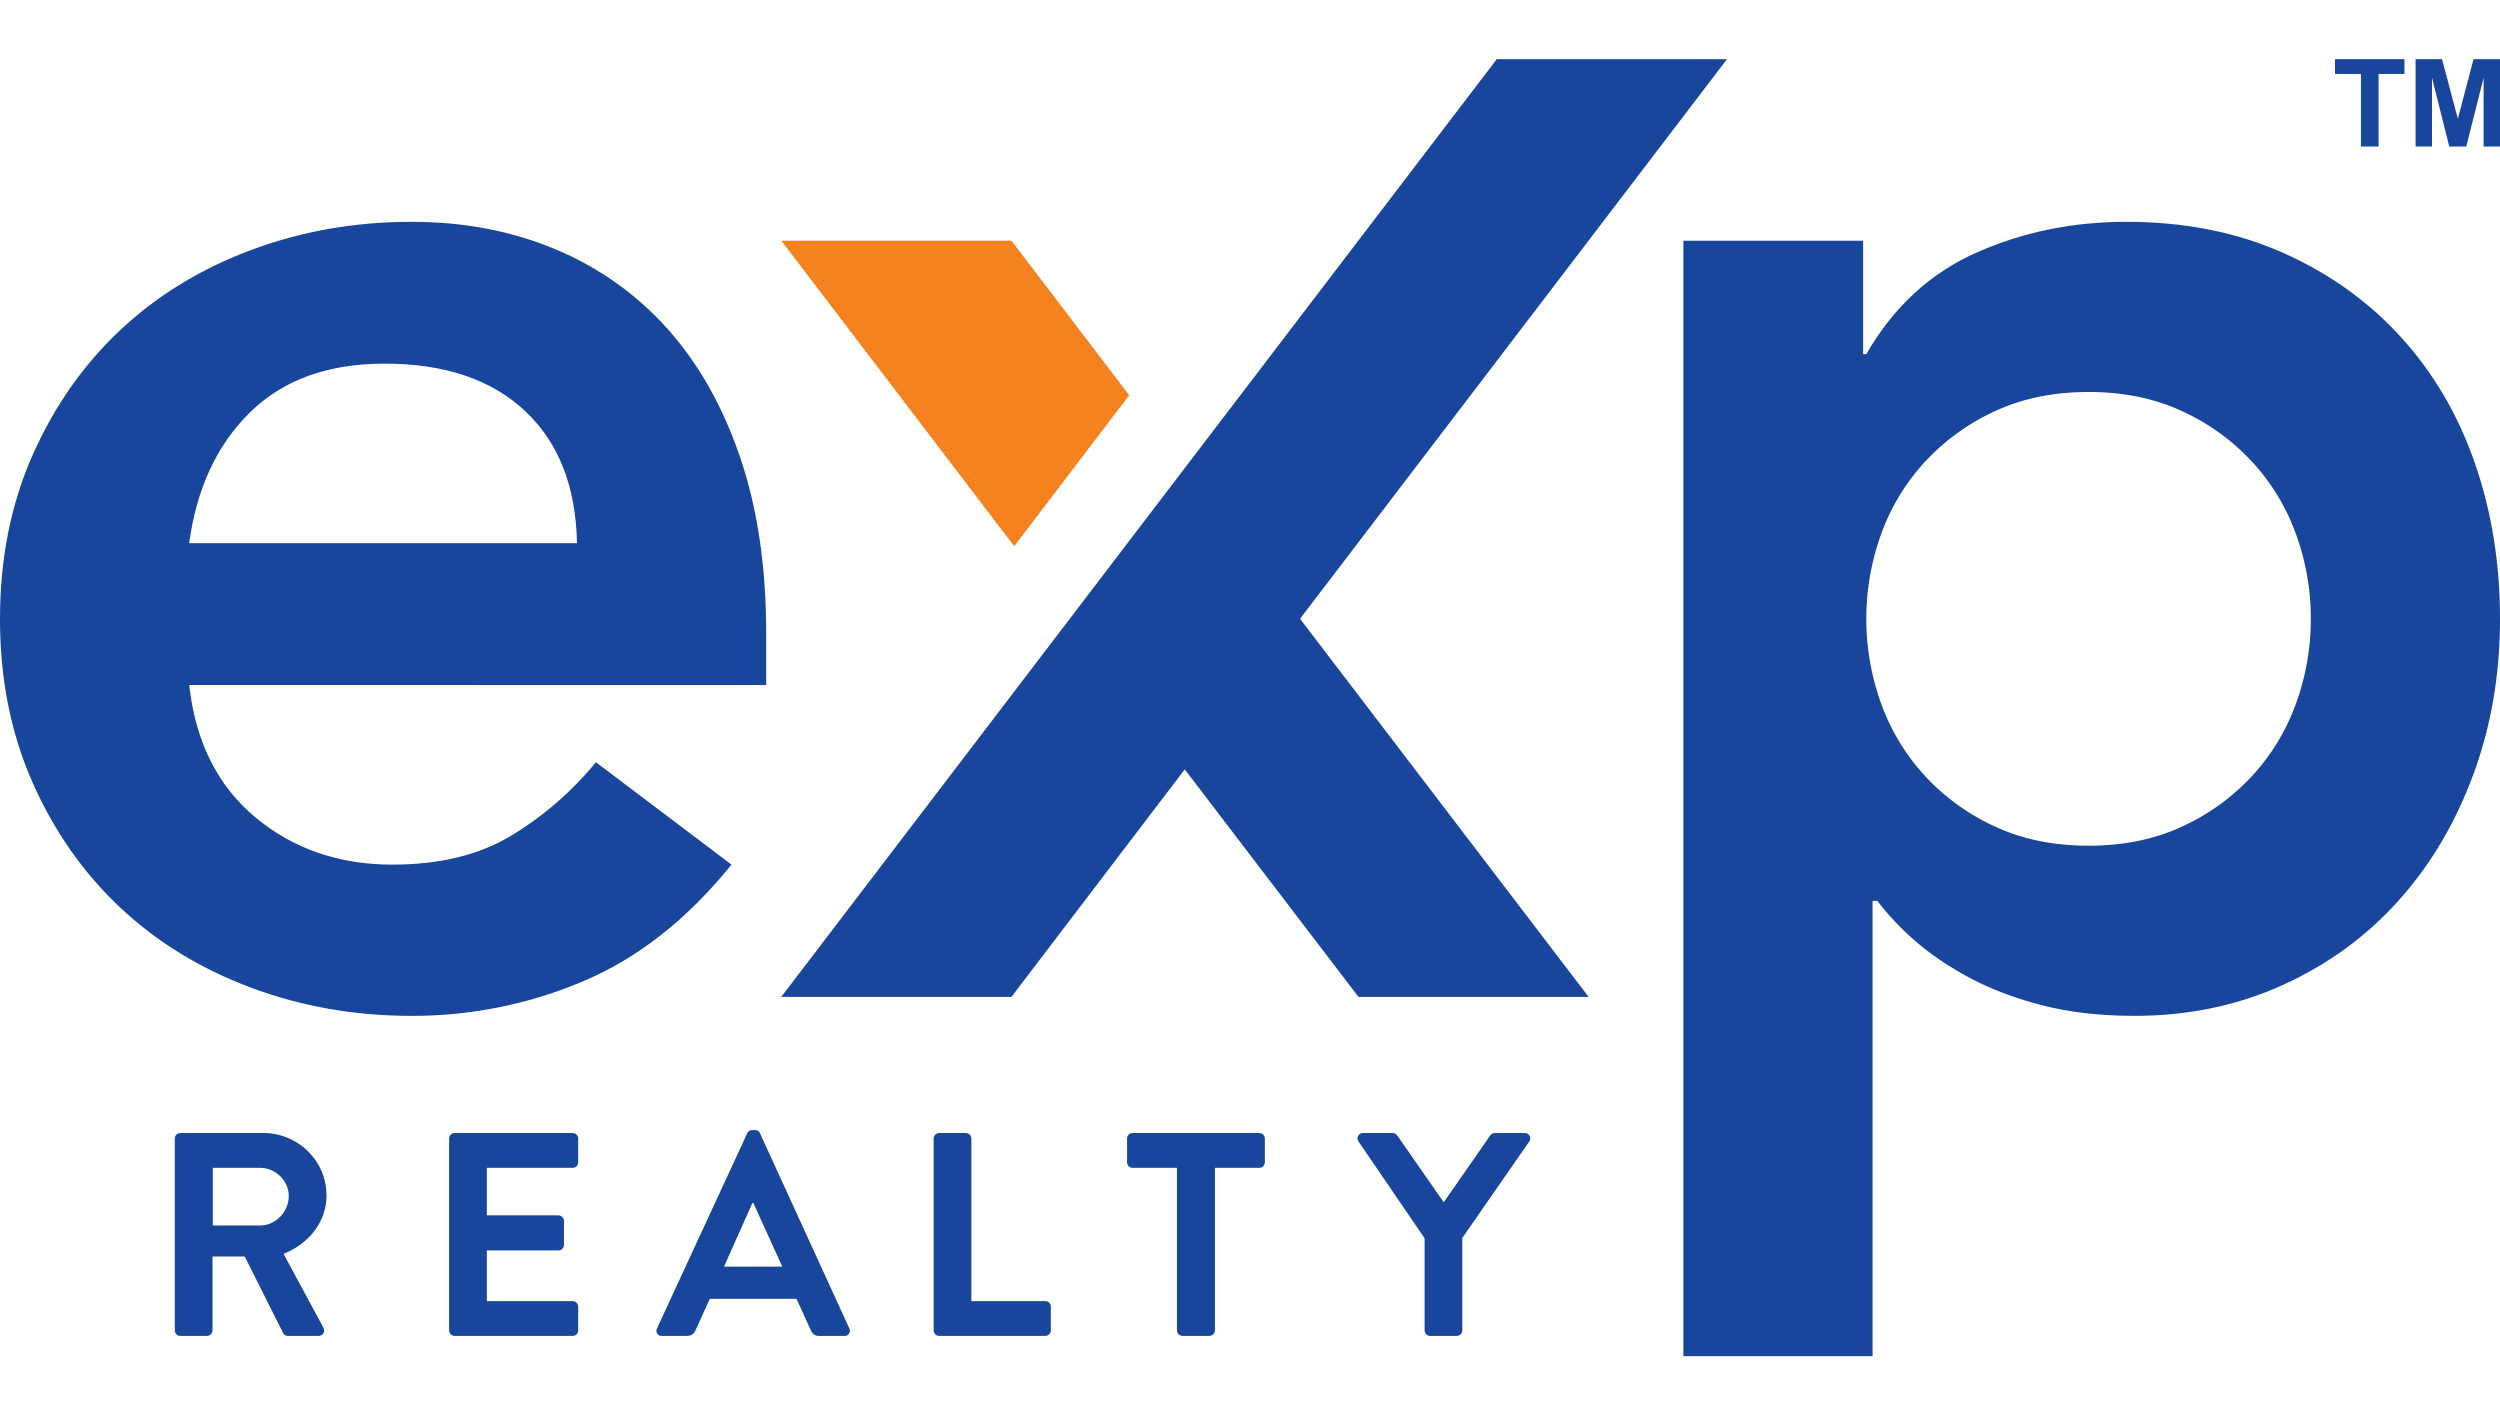 eXp Realty alcanza la cifra de 60.000 agentes inmobiliarios en todo el mundo